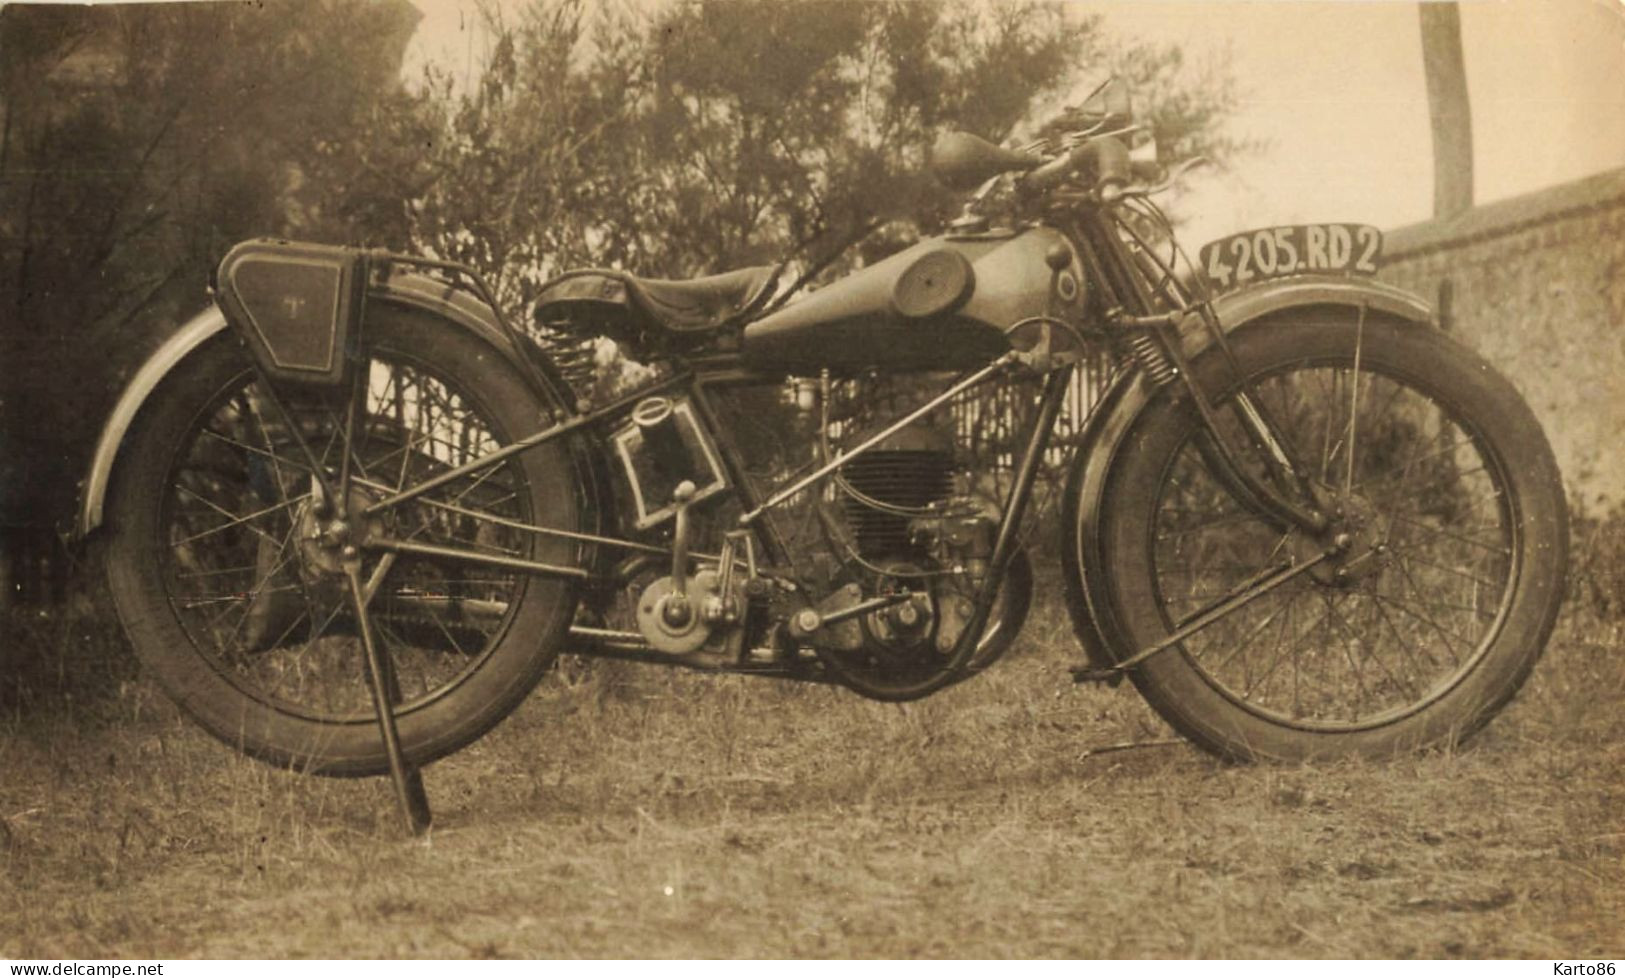 Moto Ancienne De Marque Modèle Type ? * Motos Motocyclette Transport * Photo Ancienne 16x9.5cm - Motos